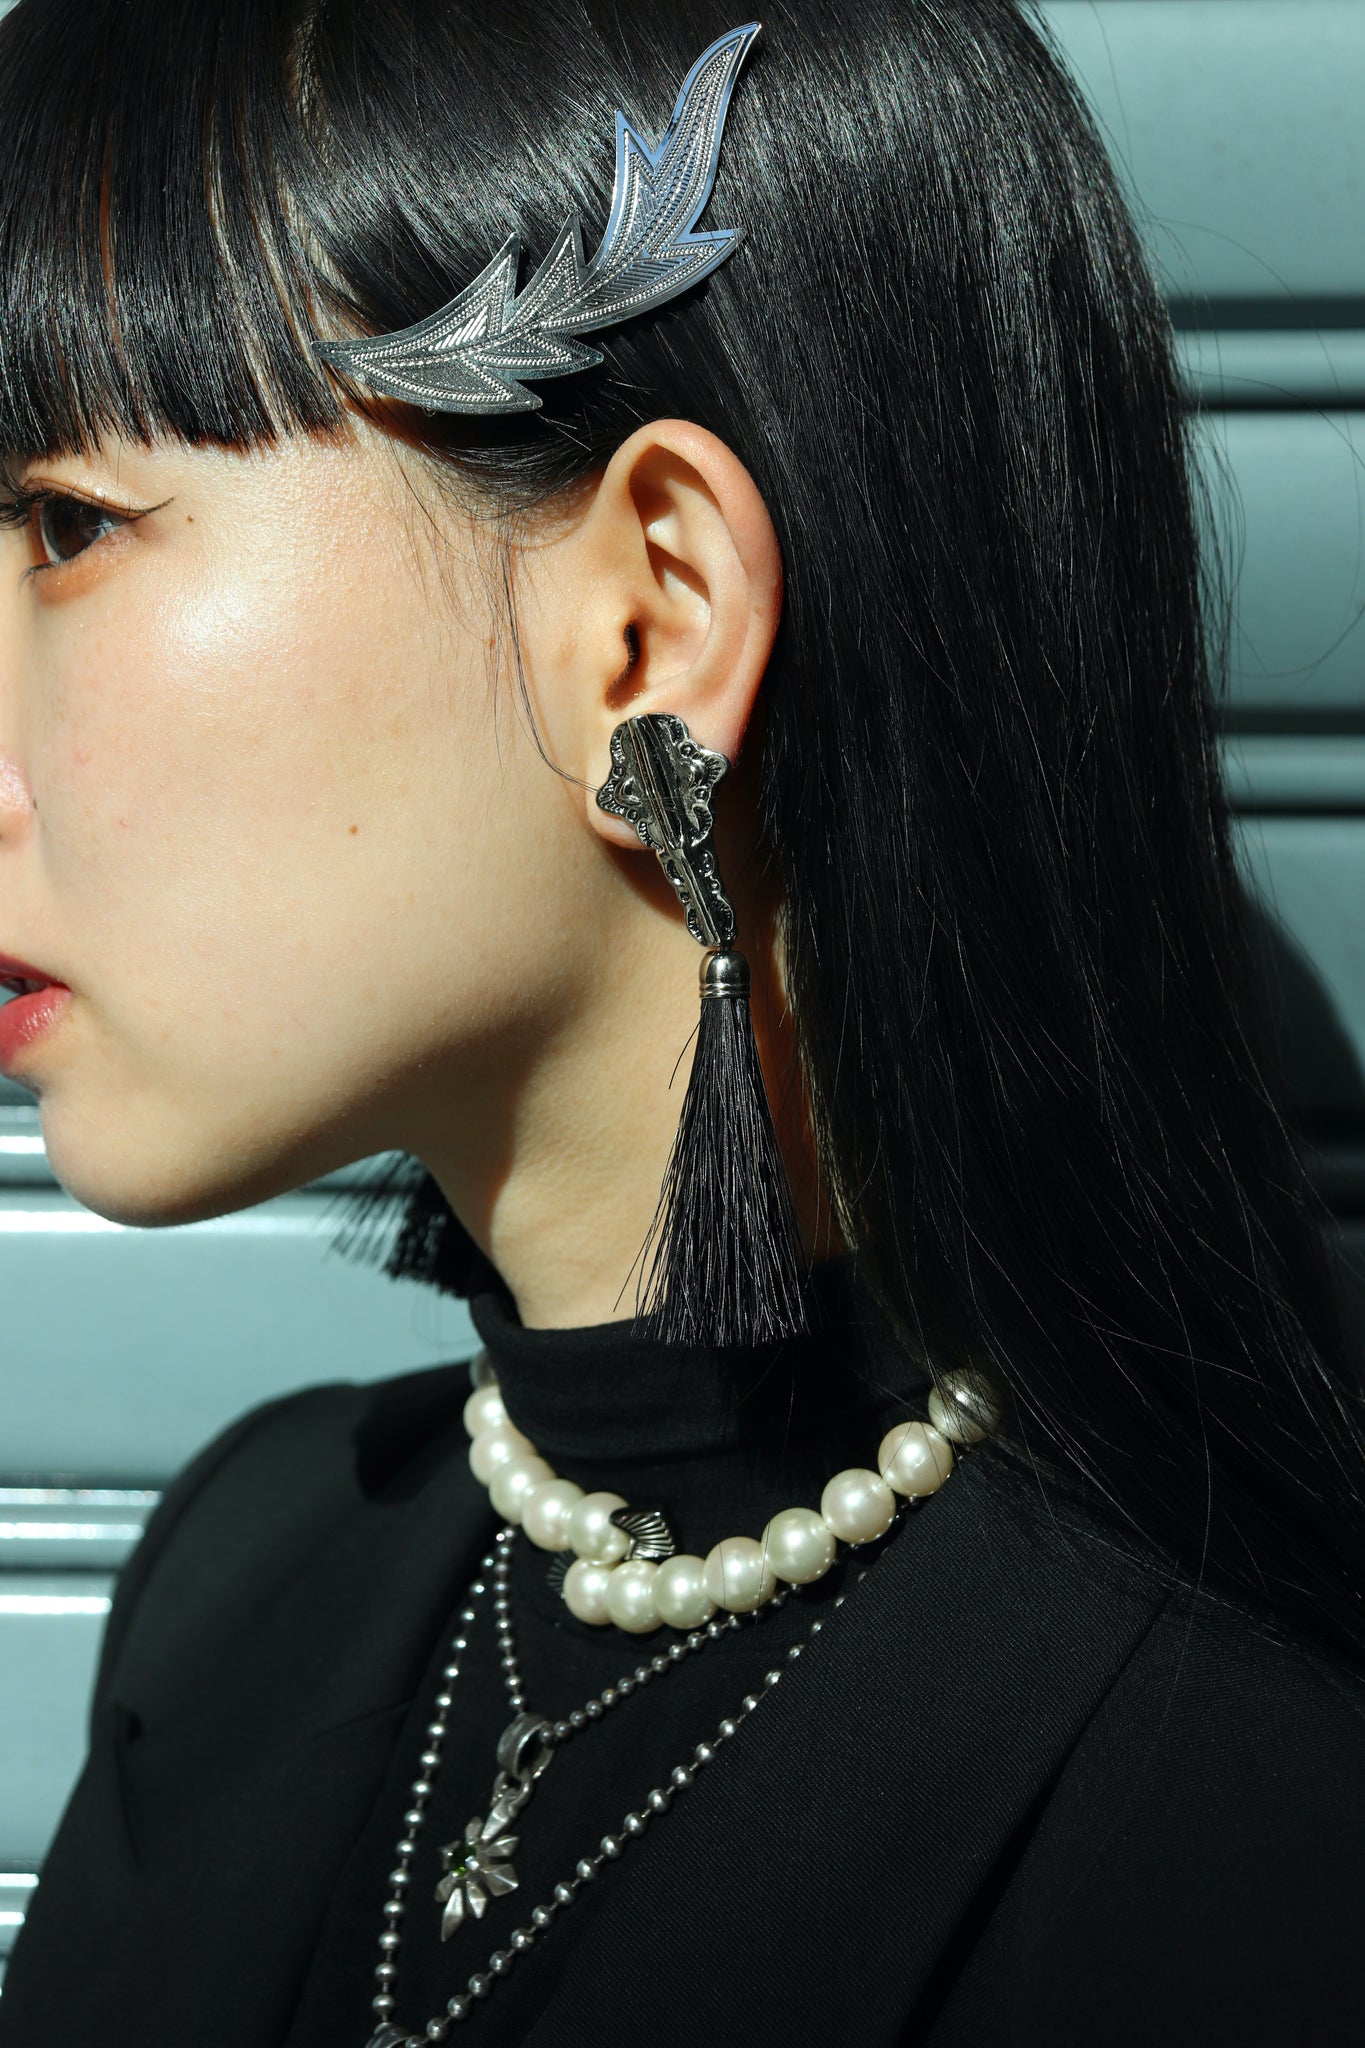 TOGA TOO 24SS METAL FRINGE EARRINGS(BLACK)を使用したスタイリング画像